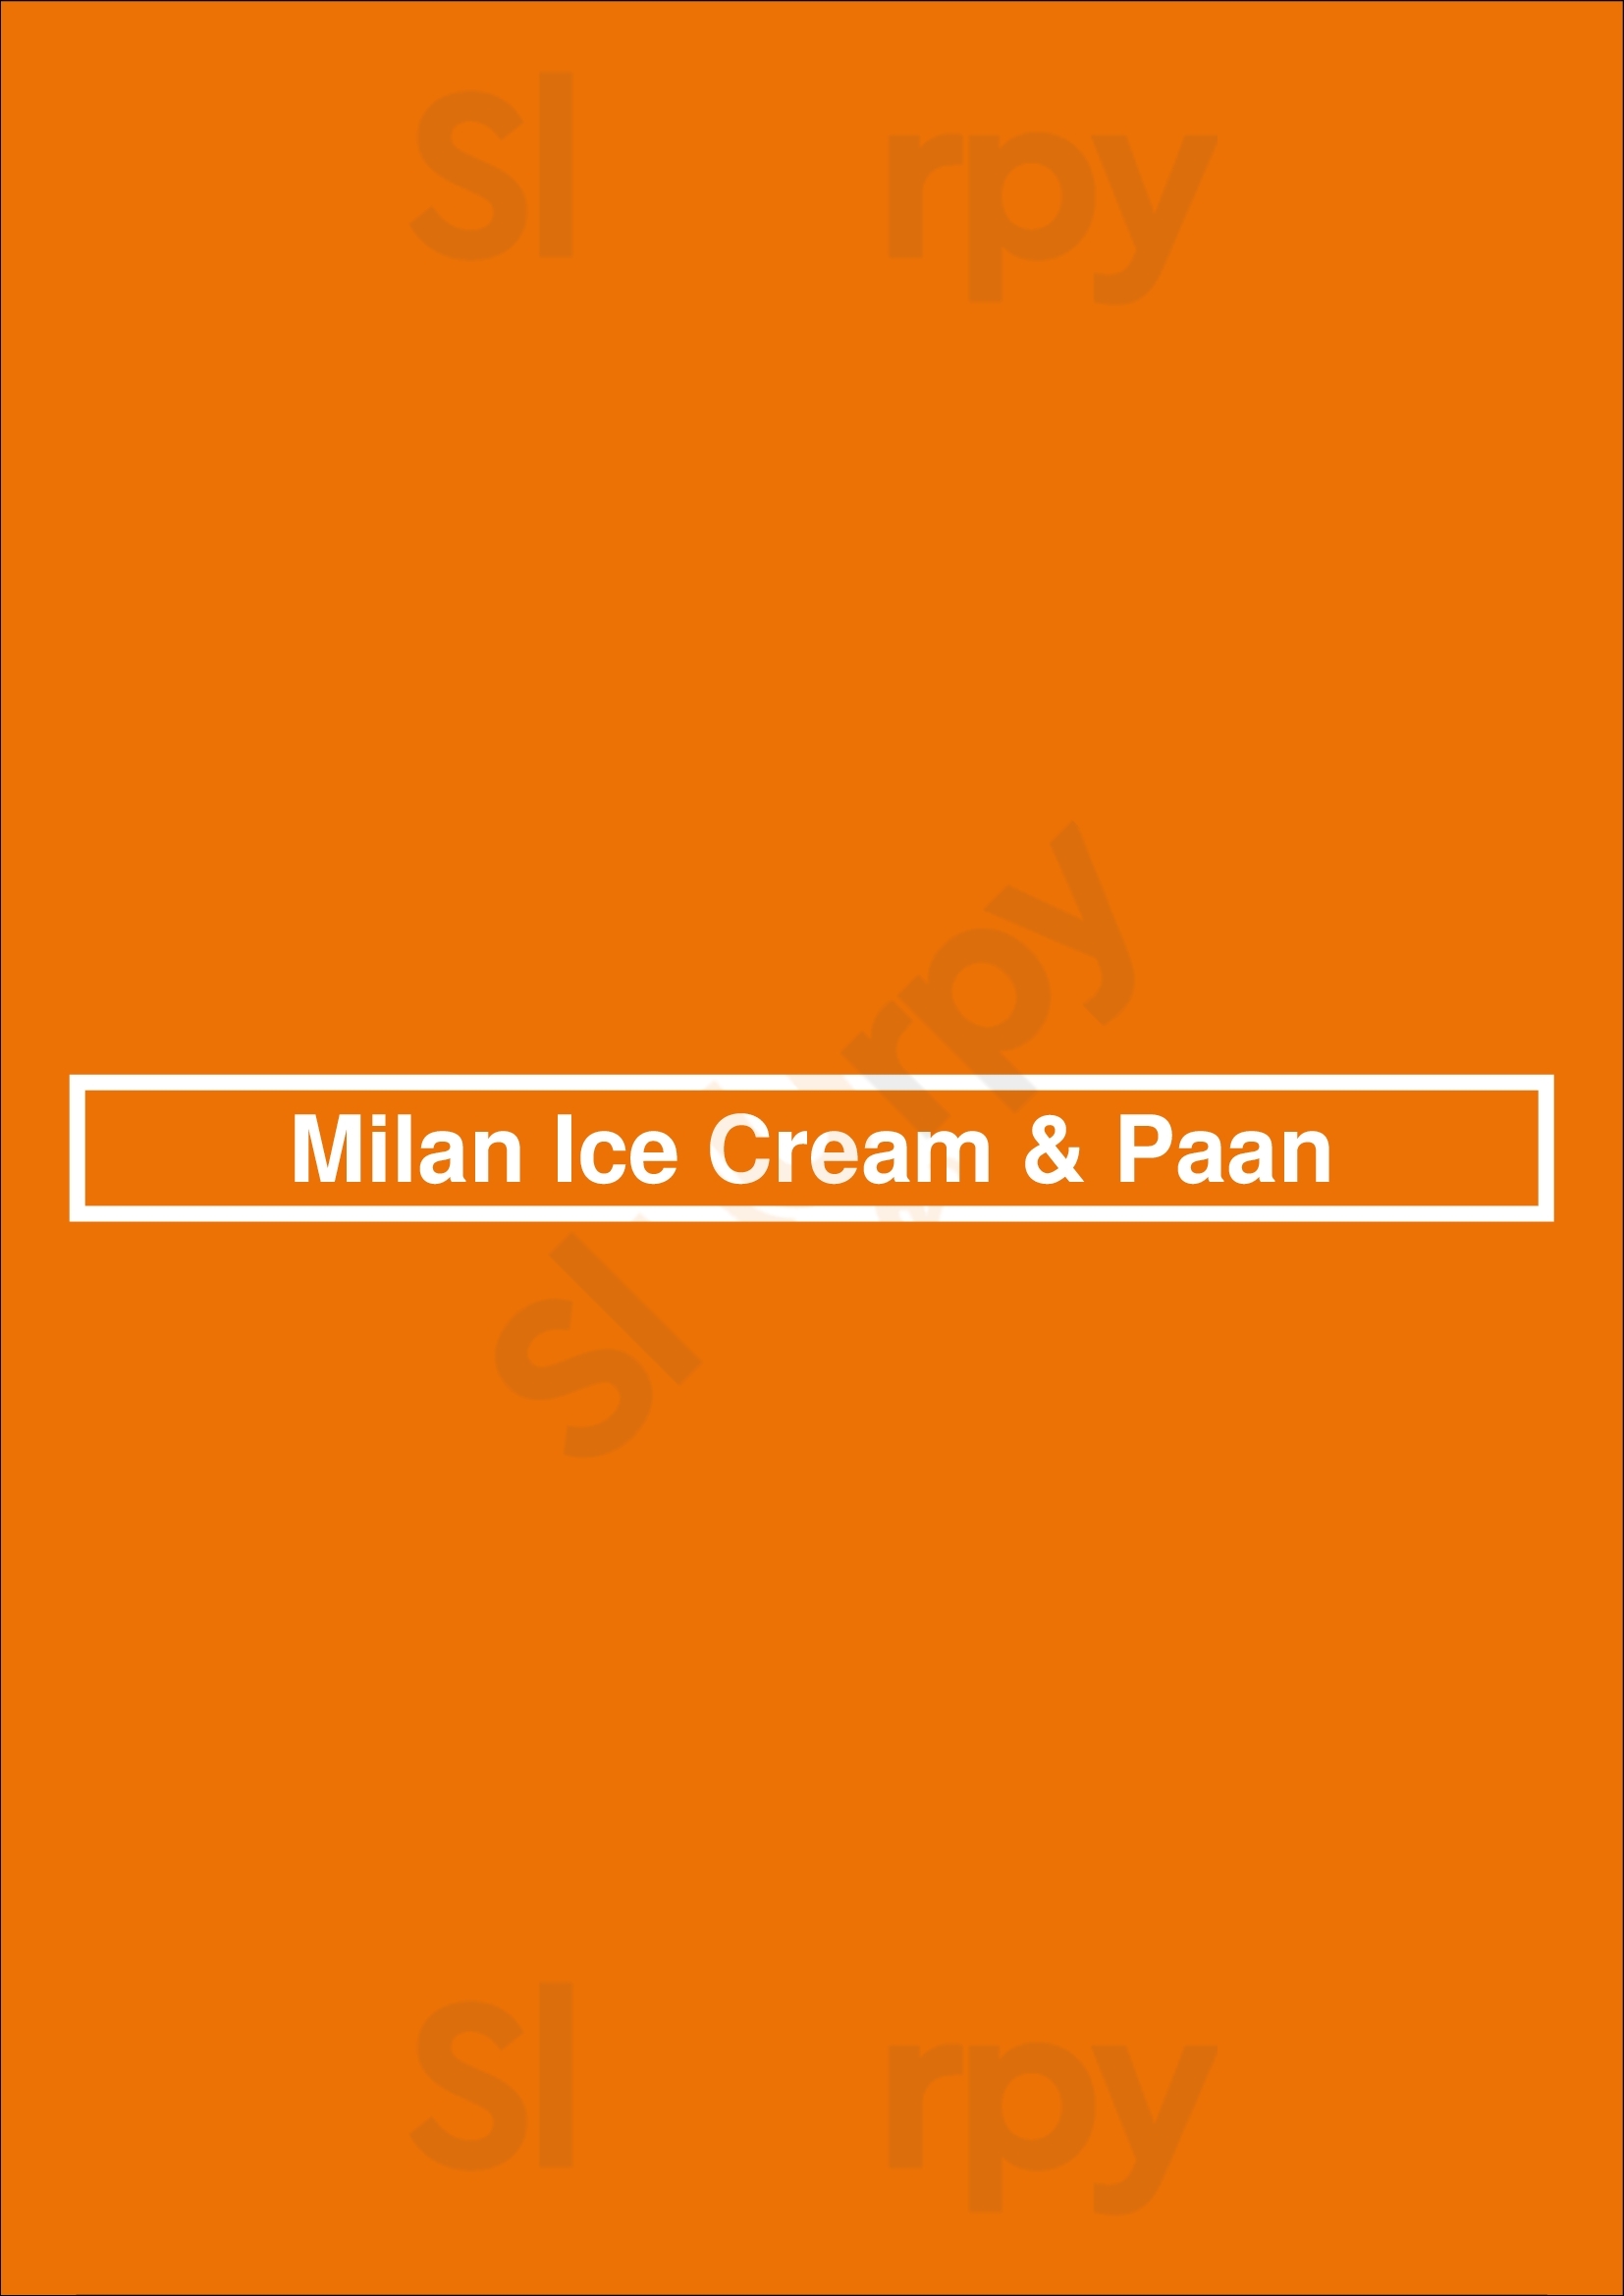 Milan Ice Cream & Paan Mississauga Menu - 1